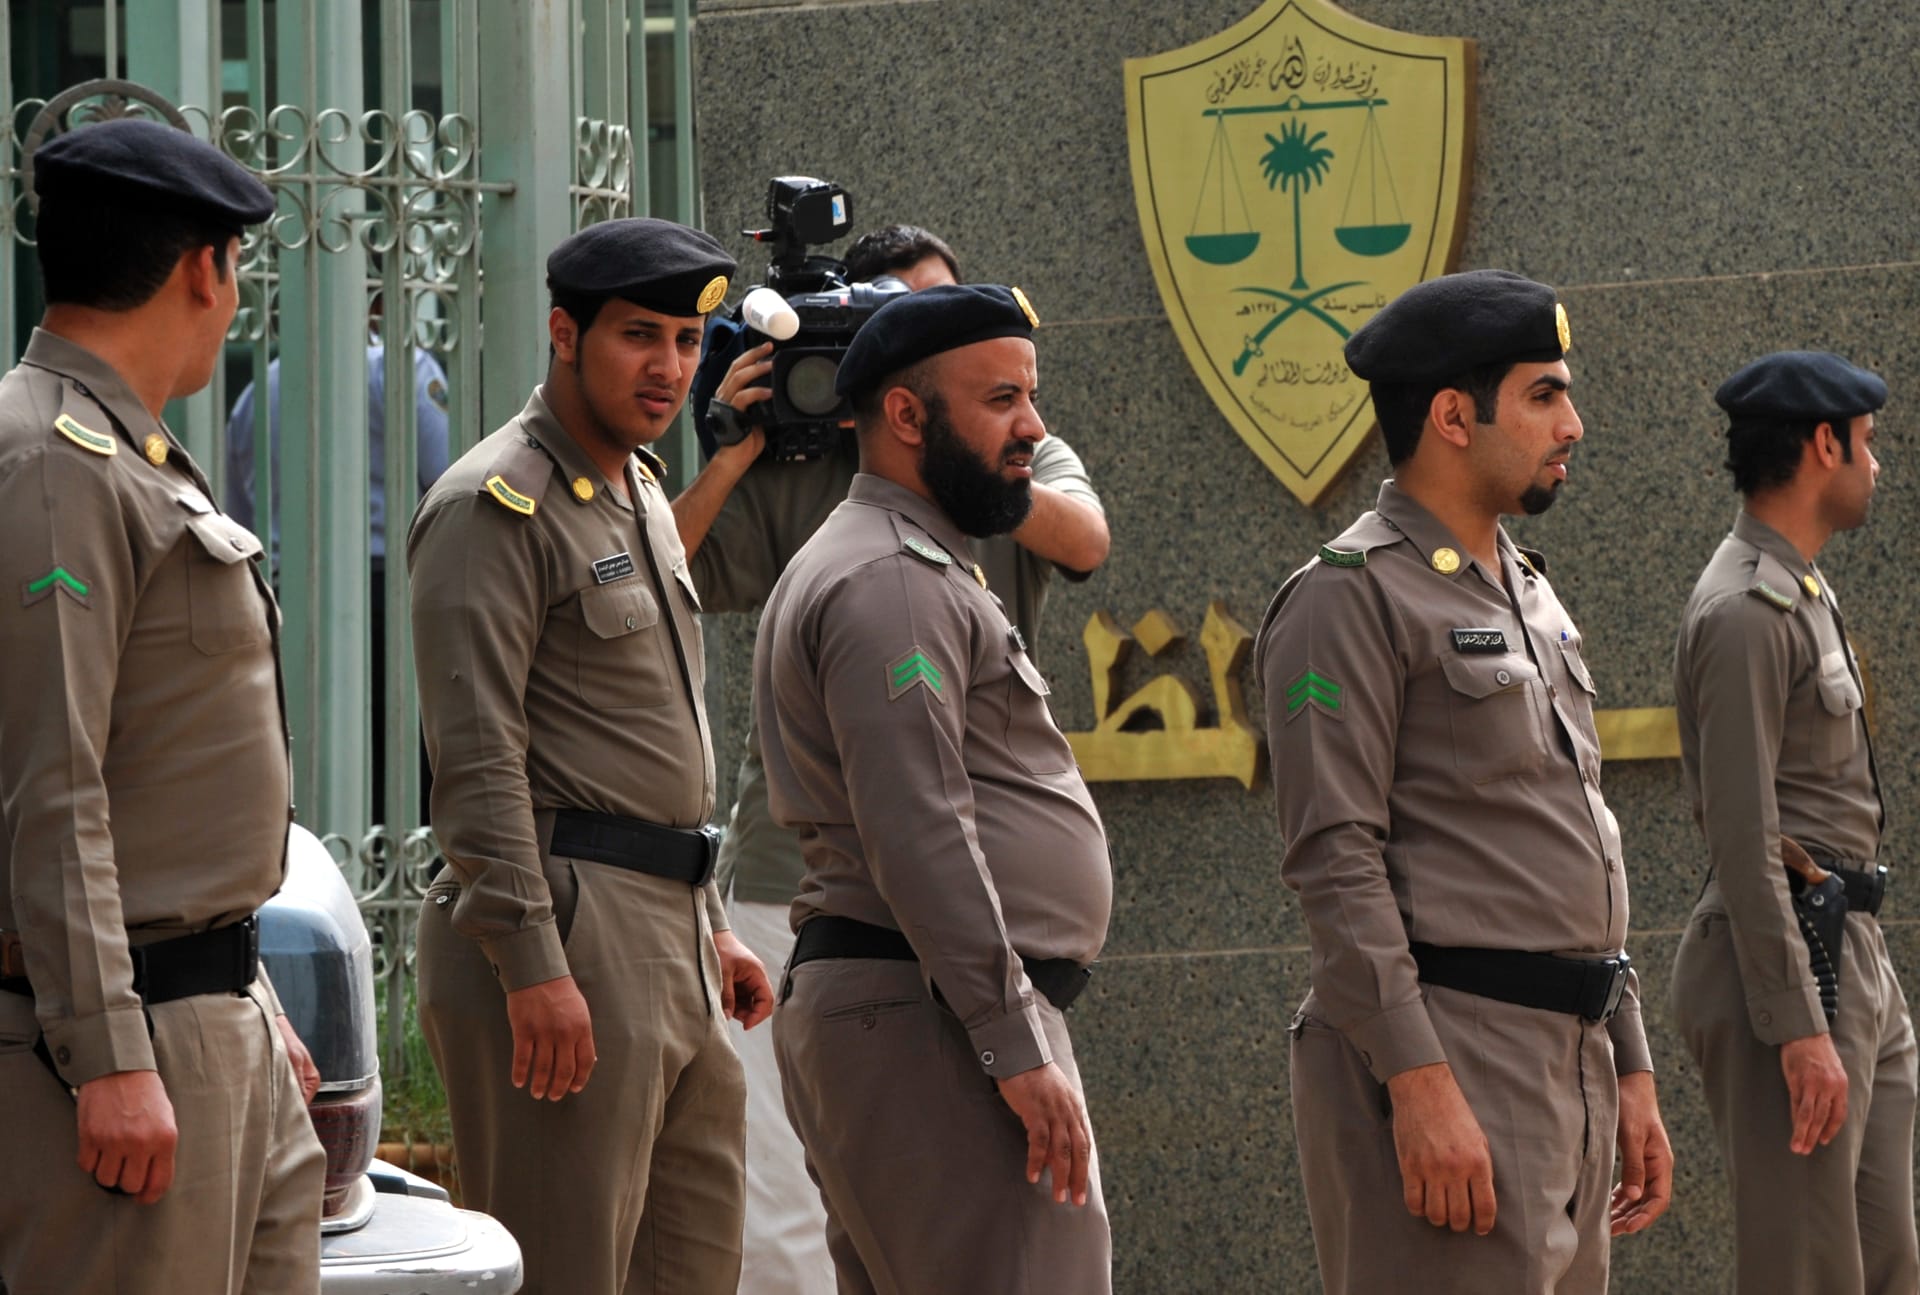 السعودية.. القبض على مواطنين انتحلا صفة رجال الأمن واعتديا على مقيمين وسلبا أموالهم